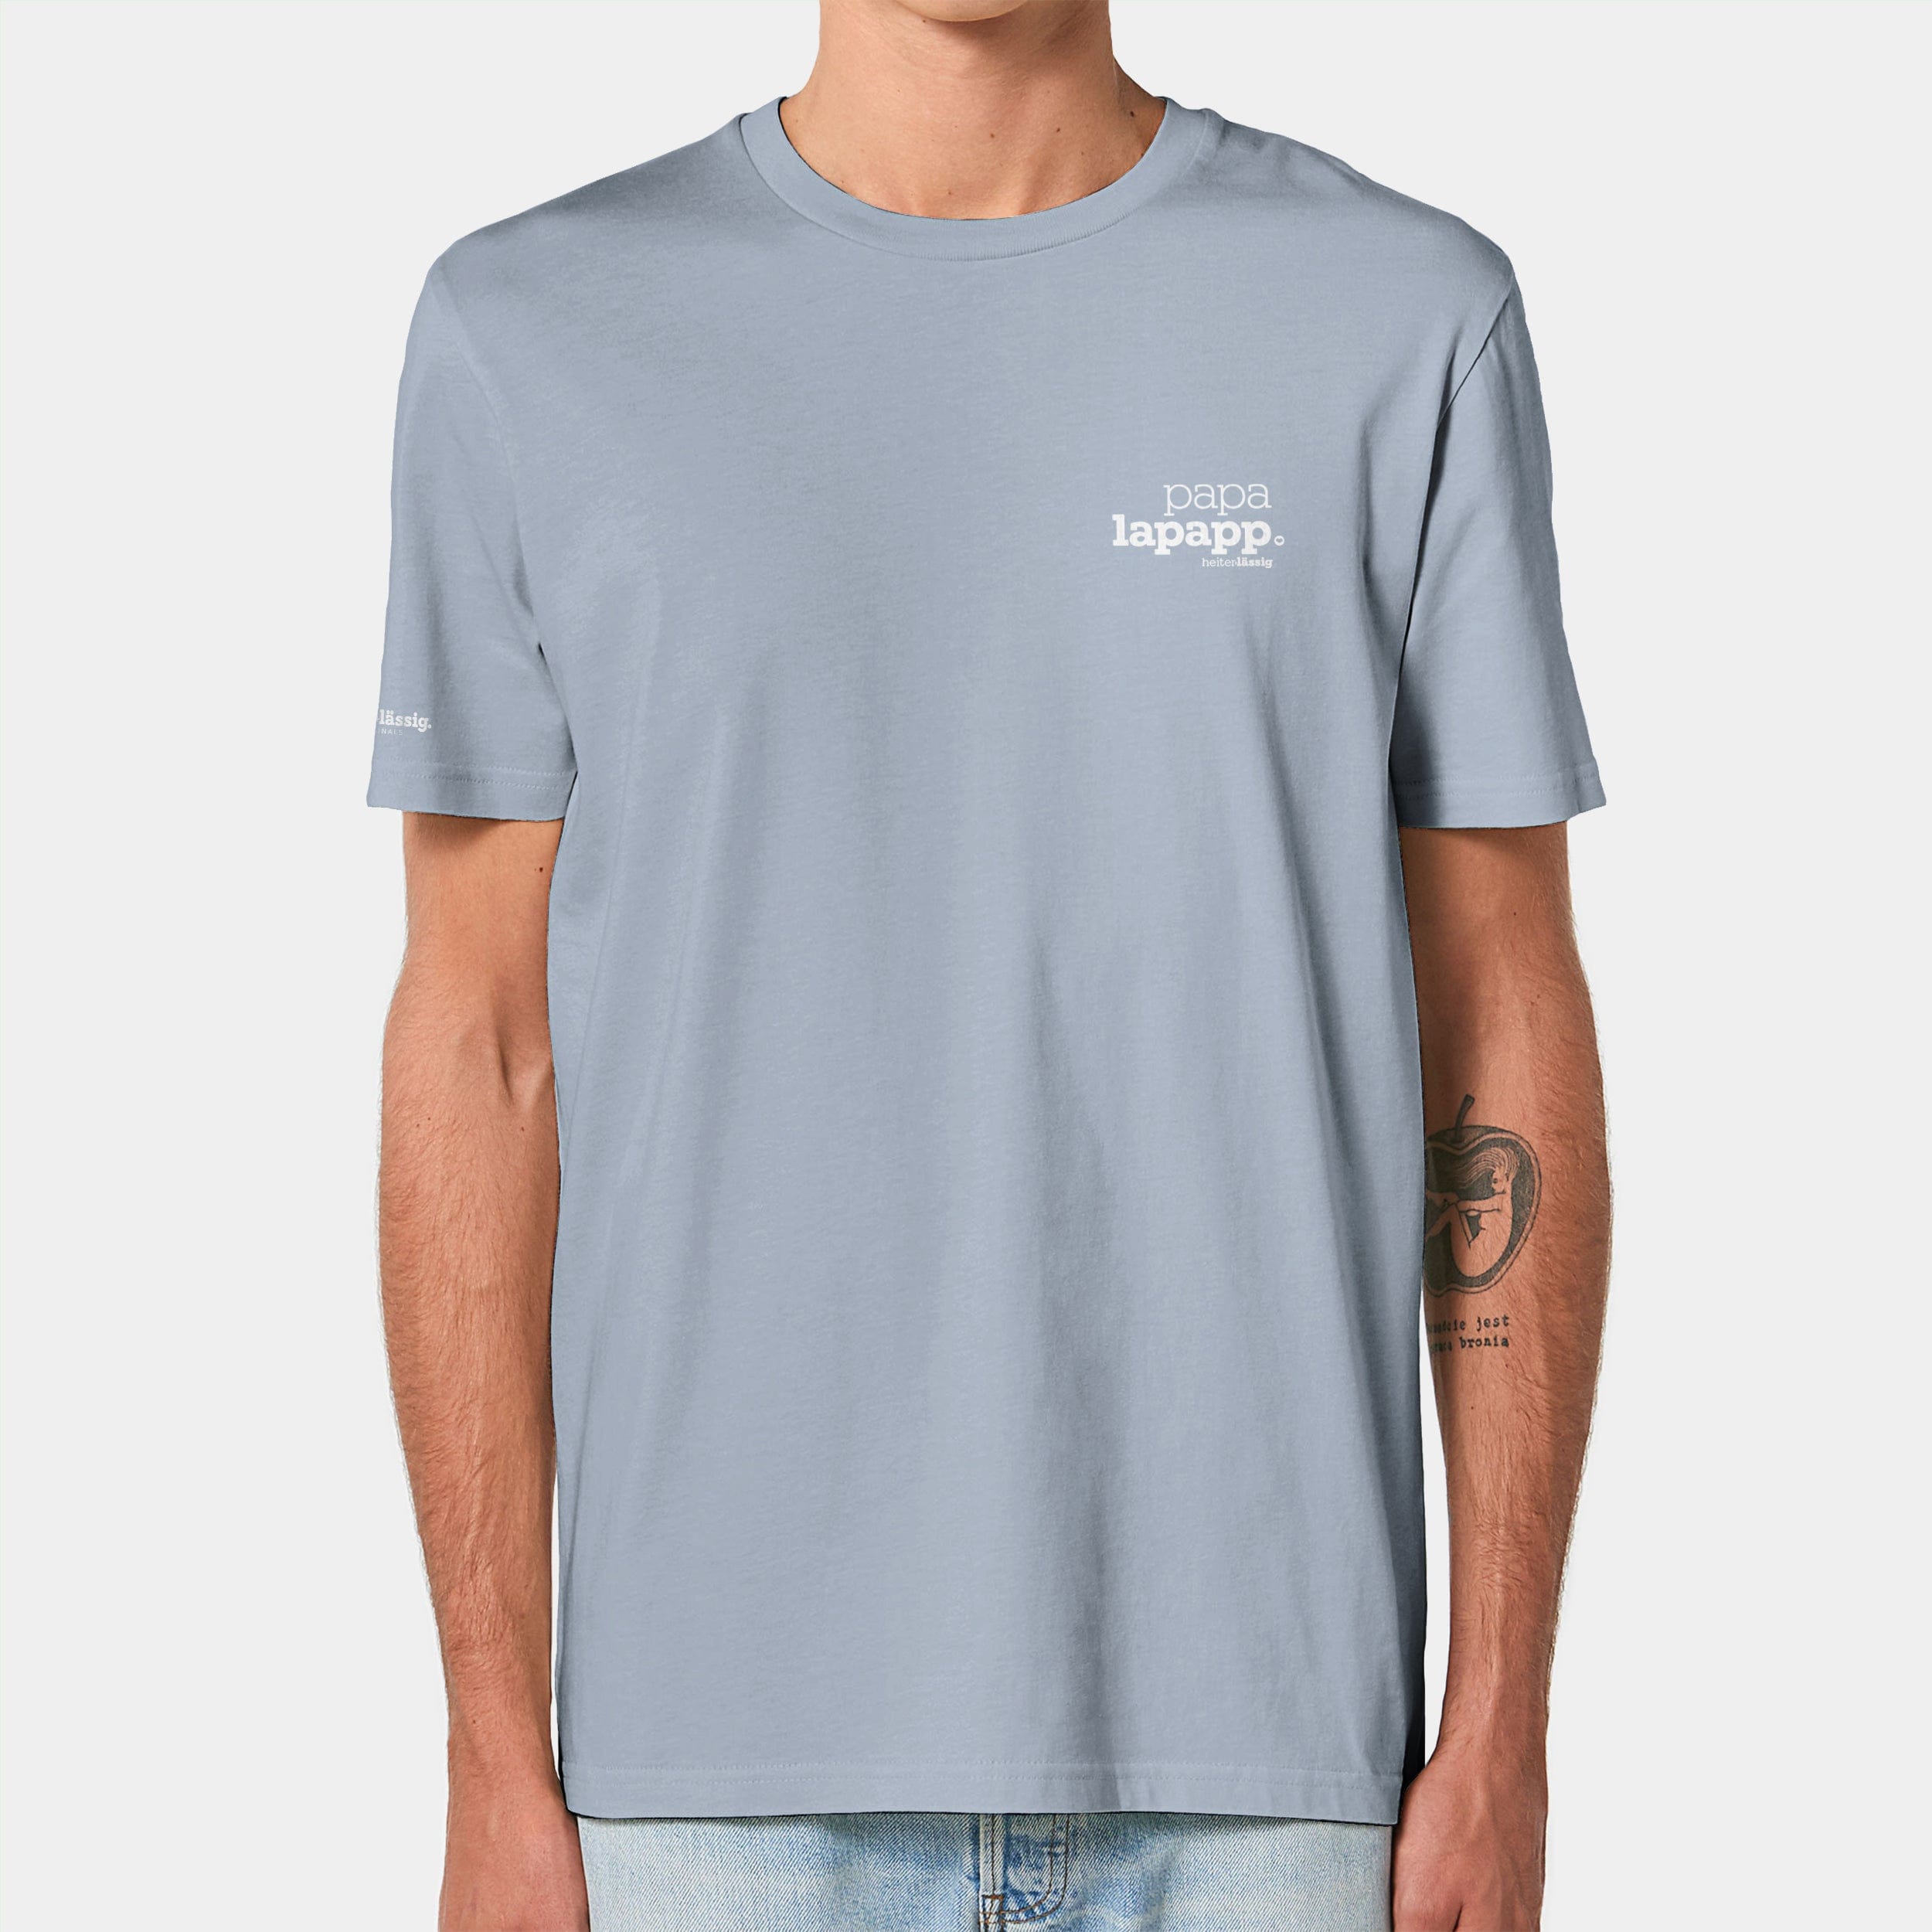 HEITER & LÄSSIG T-Shirt ORIGINAL "papalapapp" XXS / serene blue - aus nachhaltiger und fairer Produktion